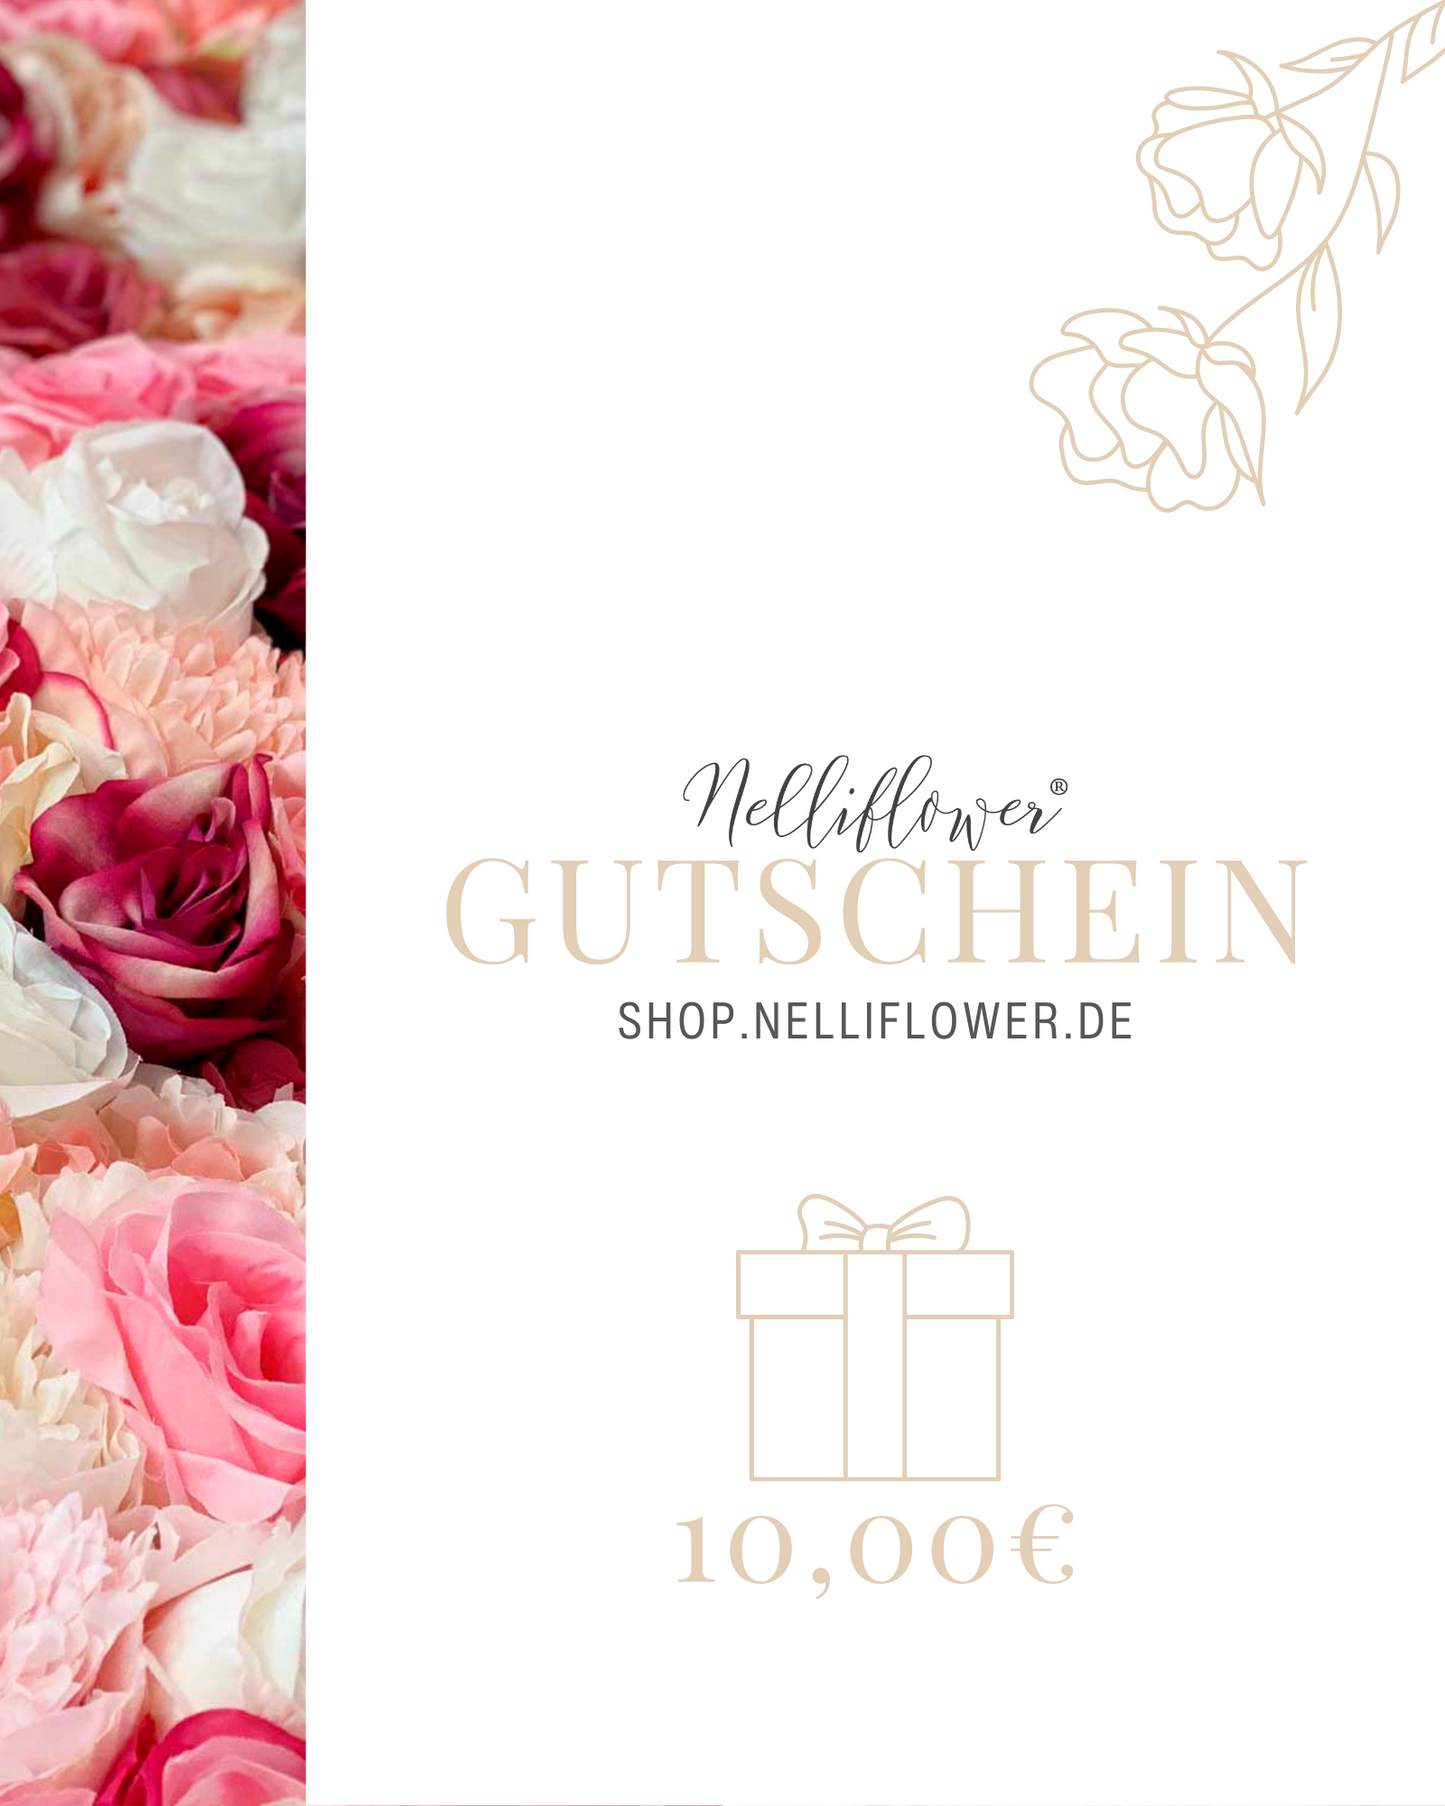 Nelliflower gift voucher online shop